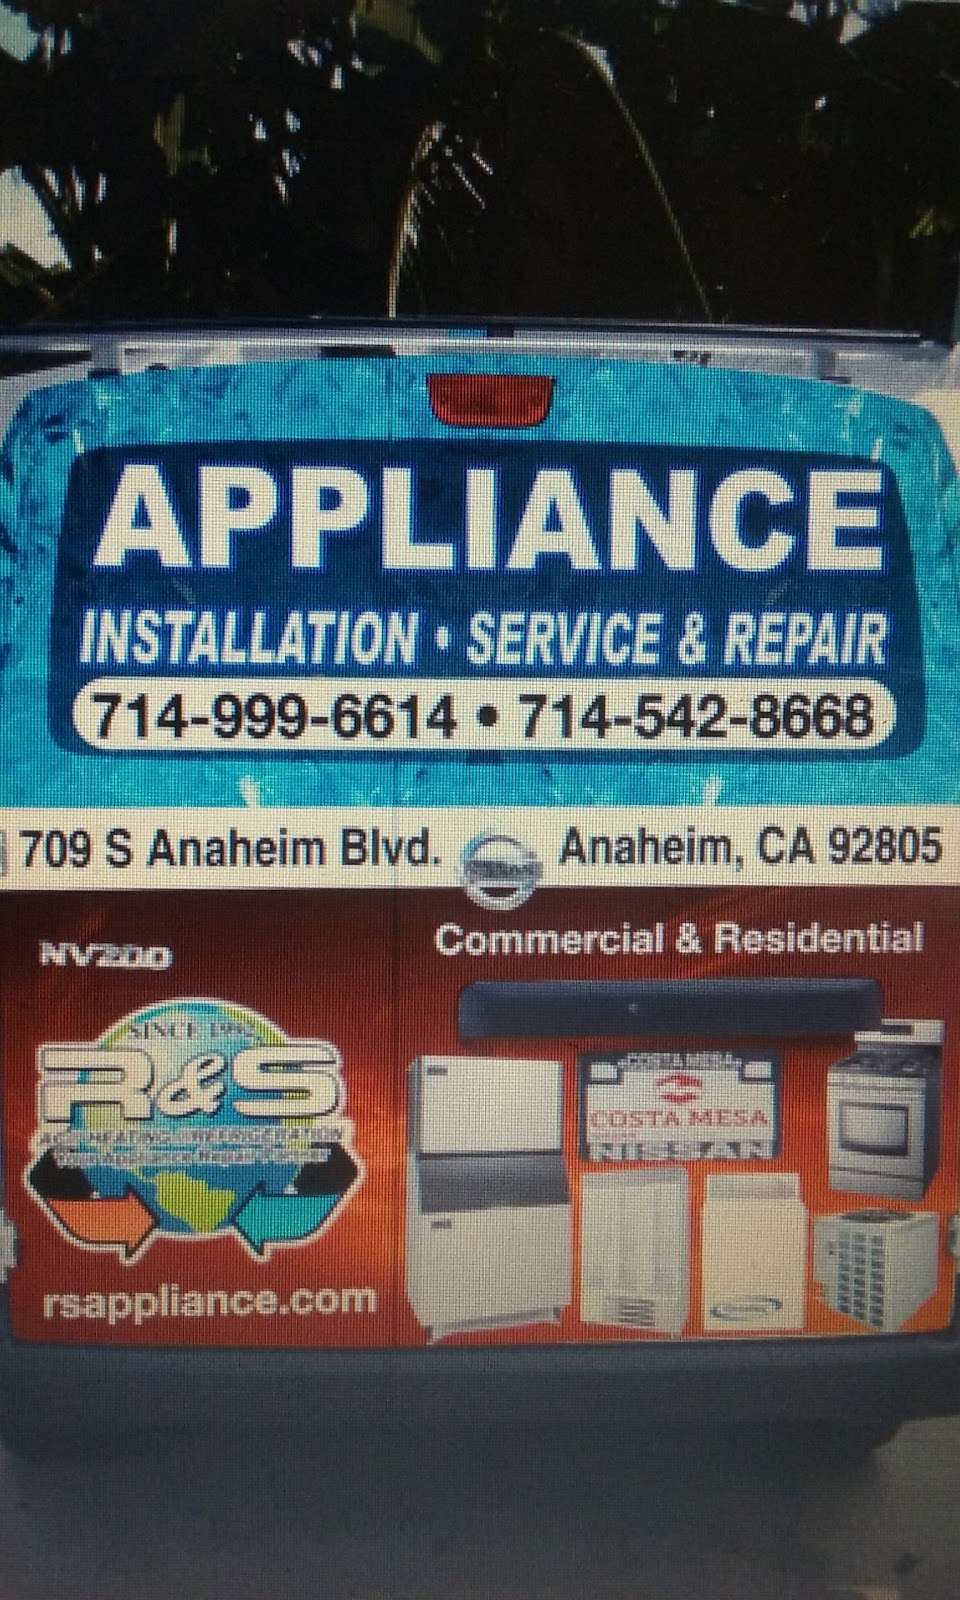 R & S Appliance Services | 709 S Anaheim Blvd, Anaheim, CA 92805 | Phone: (714) 999-6614